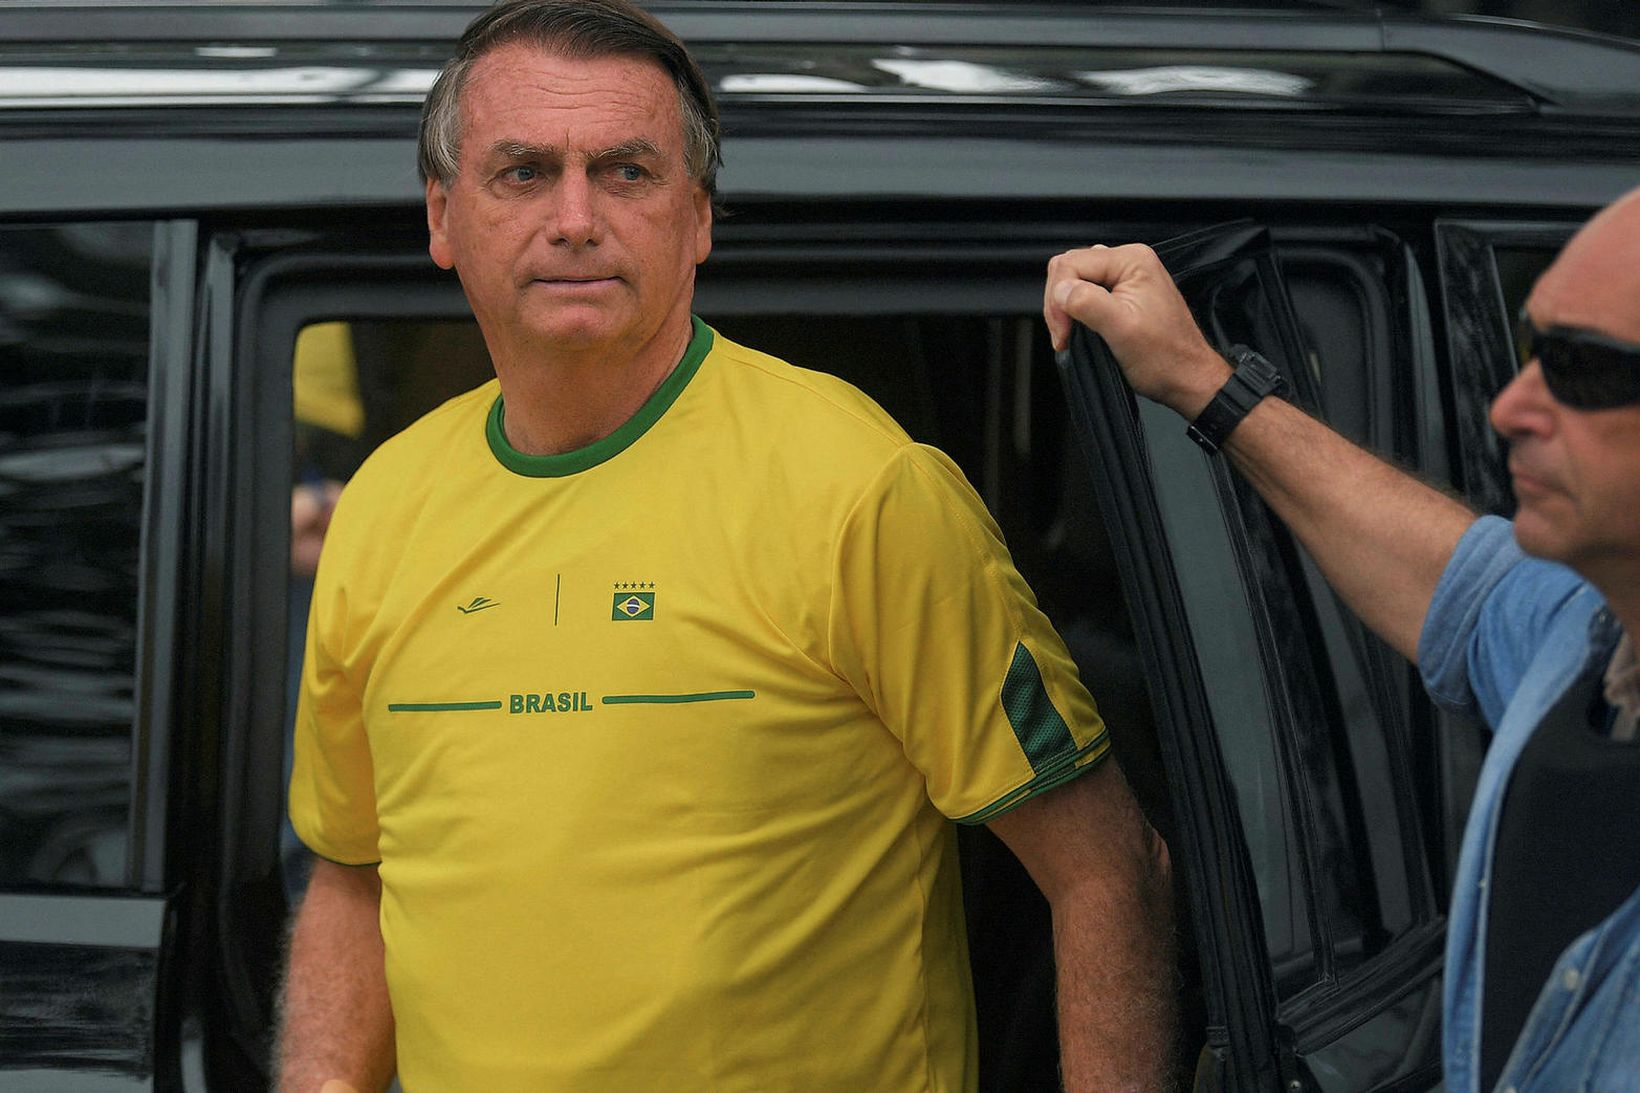 Bolsonaro greiddi atkvæði í treyju brasilíska landsliðsins í knattspyrnu í …